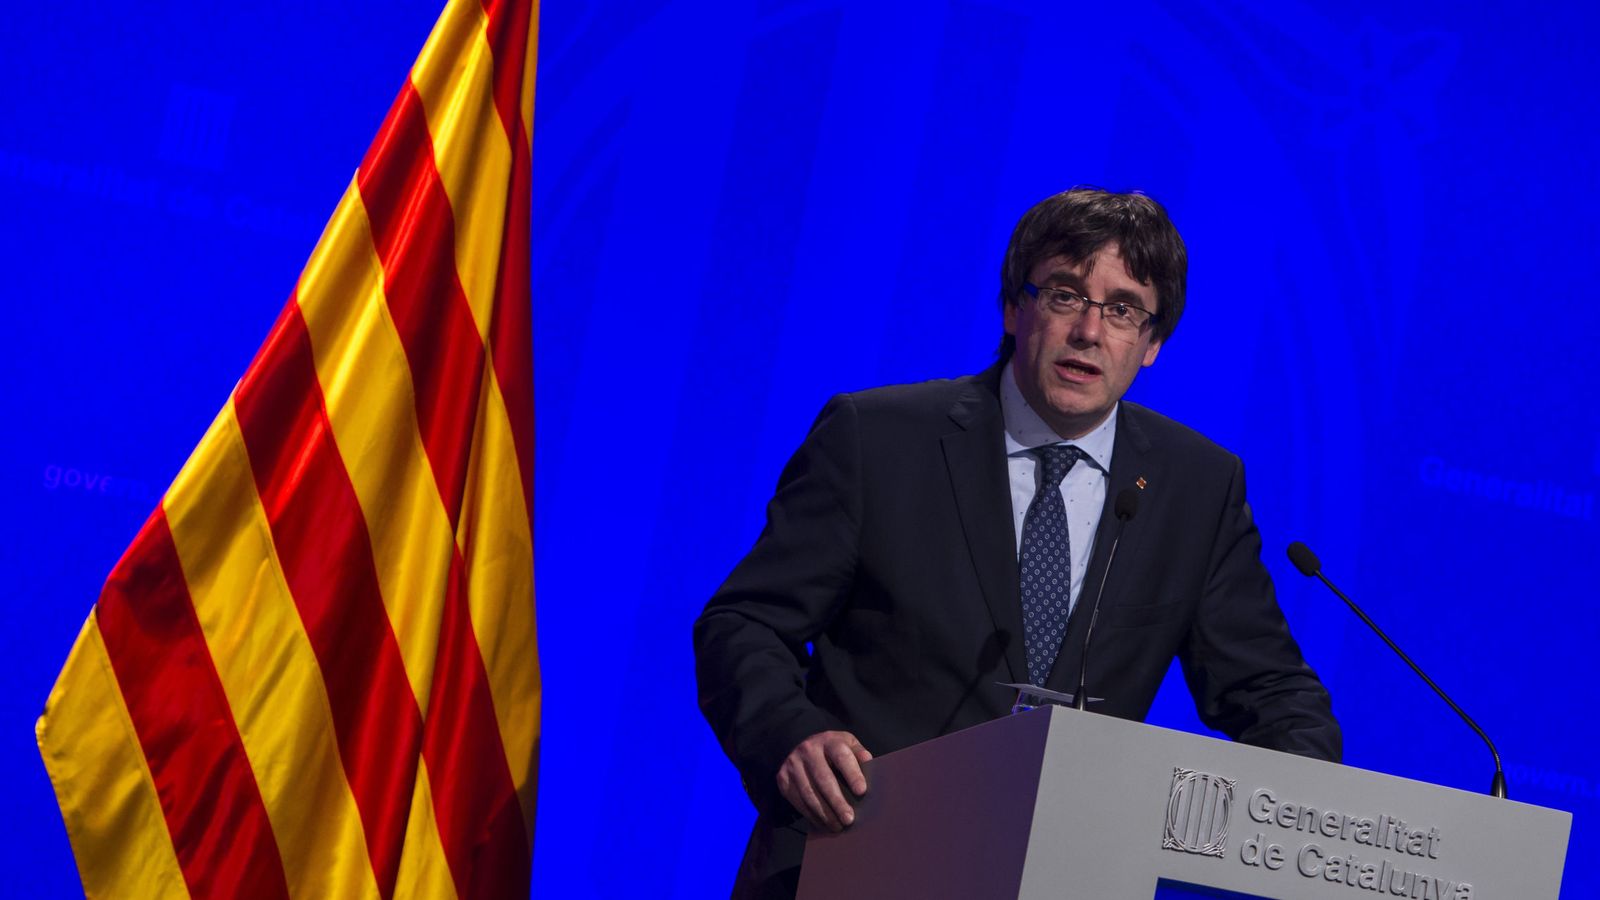 Foto: El presidente de la Generalitat de Catalunya, Carles Puigdemont, durante una rueda de prensa. (EFE)